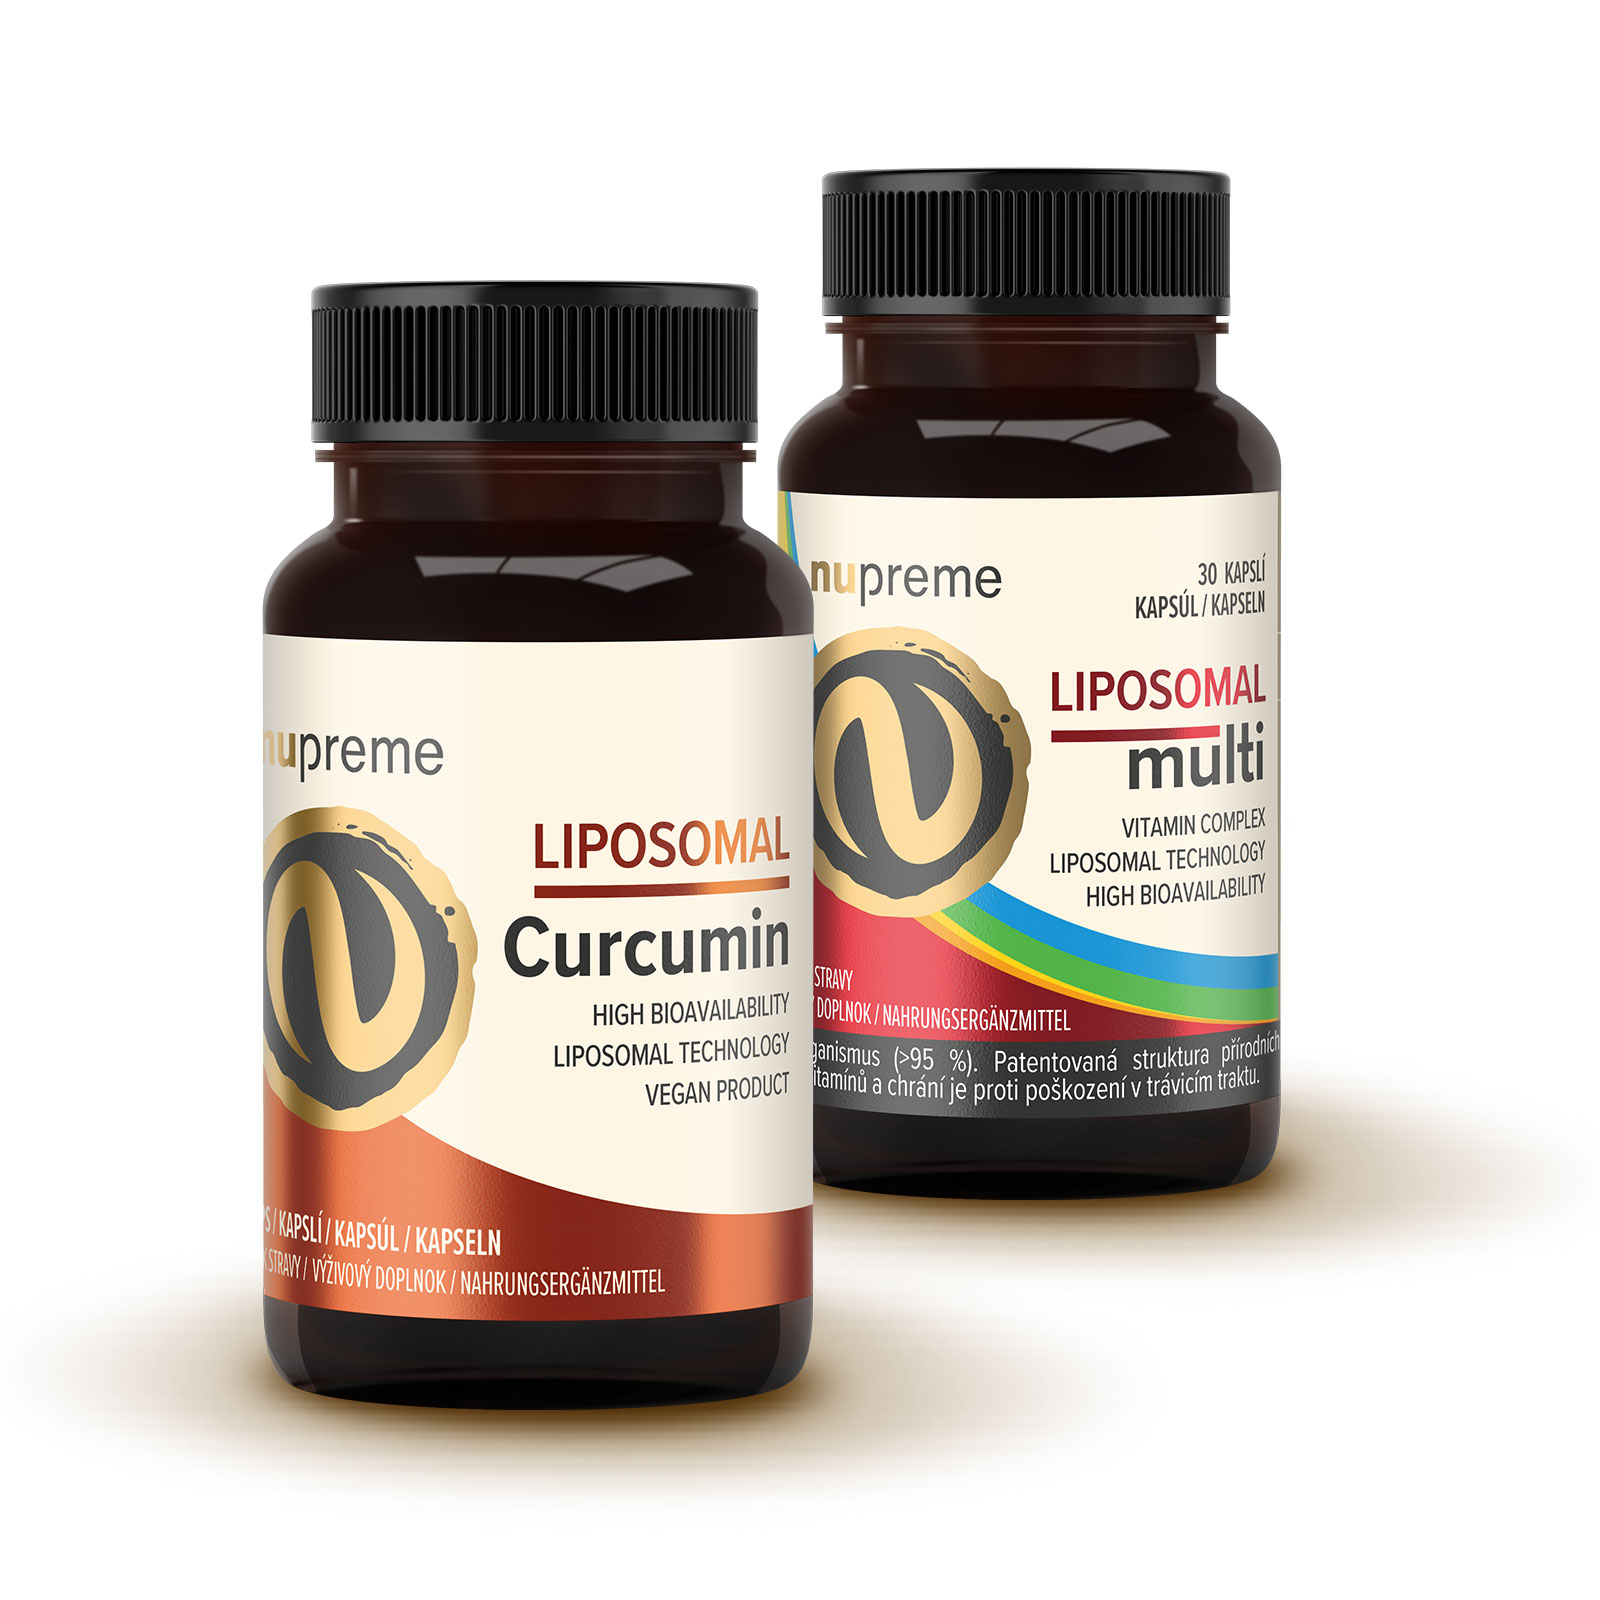 Zobrazit detail výrobku Nupreme Liposomal Curcumin + Liposomal Multi 2 x 30 kapslí + 2 měsíce na vrácení zboží